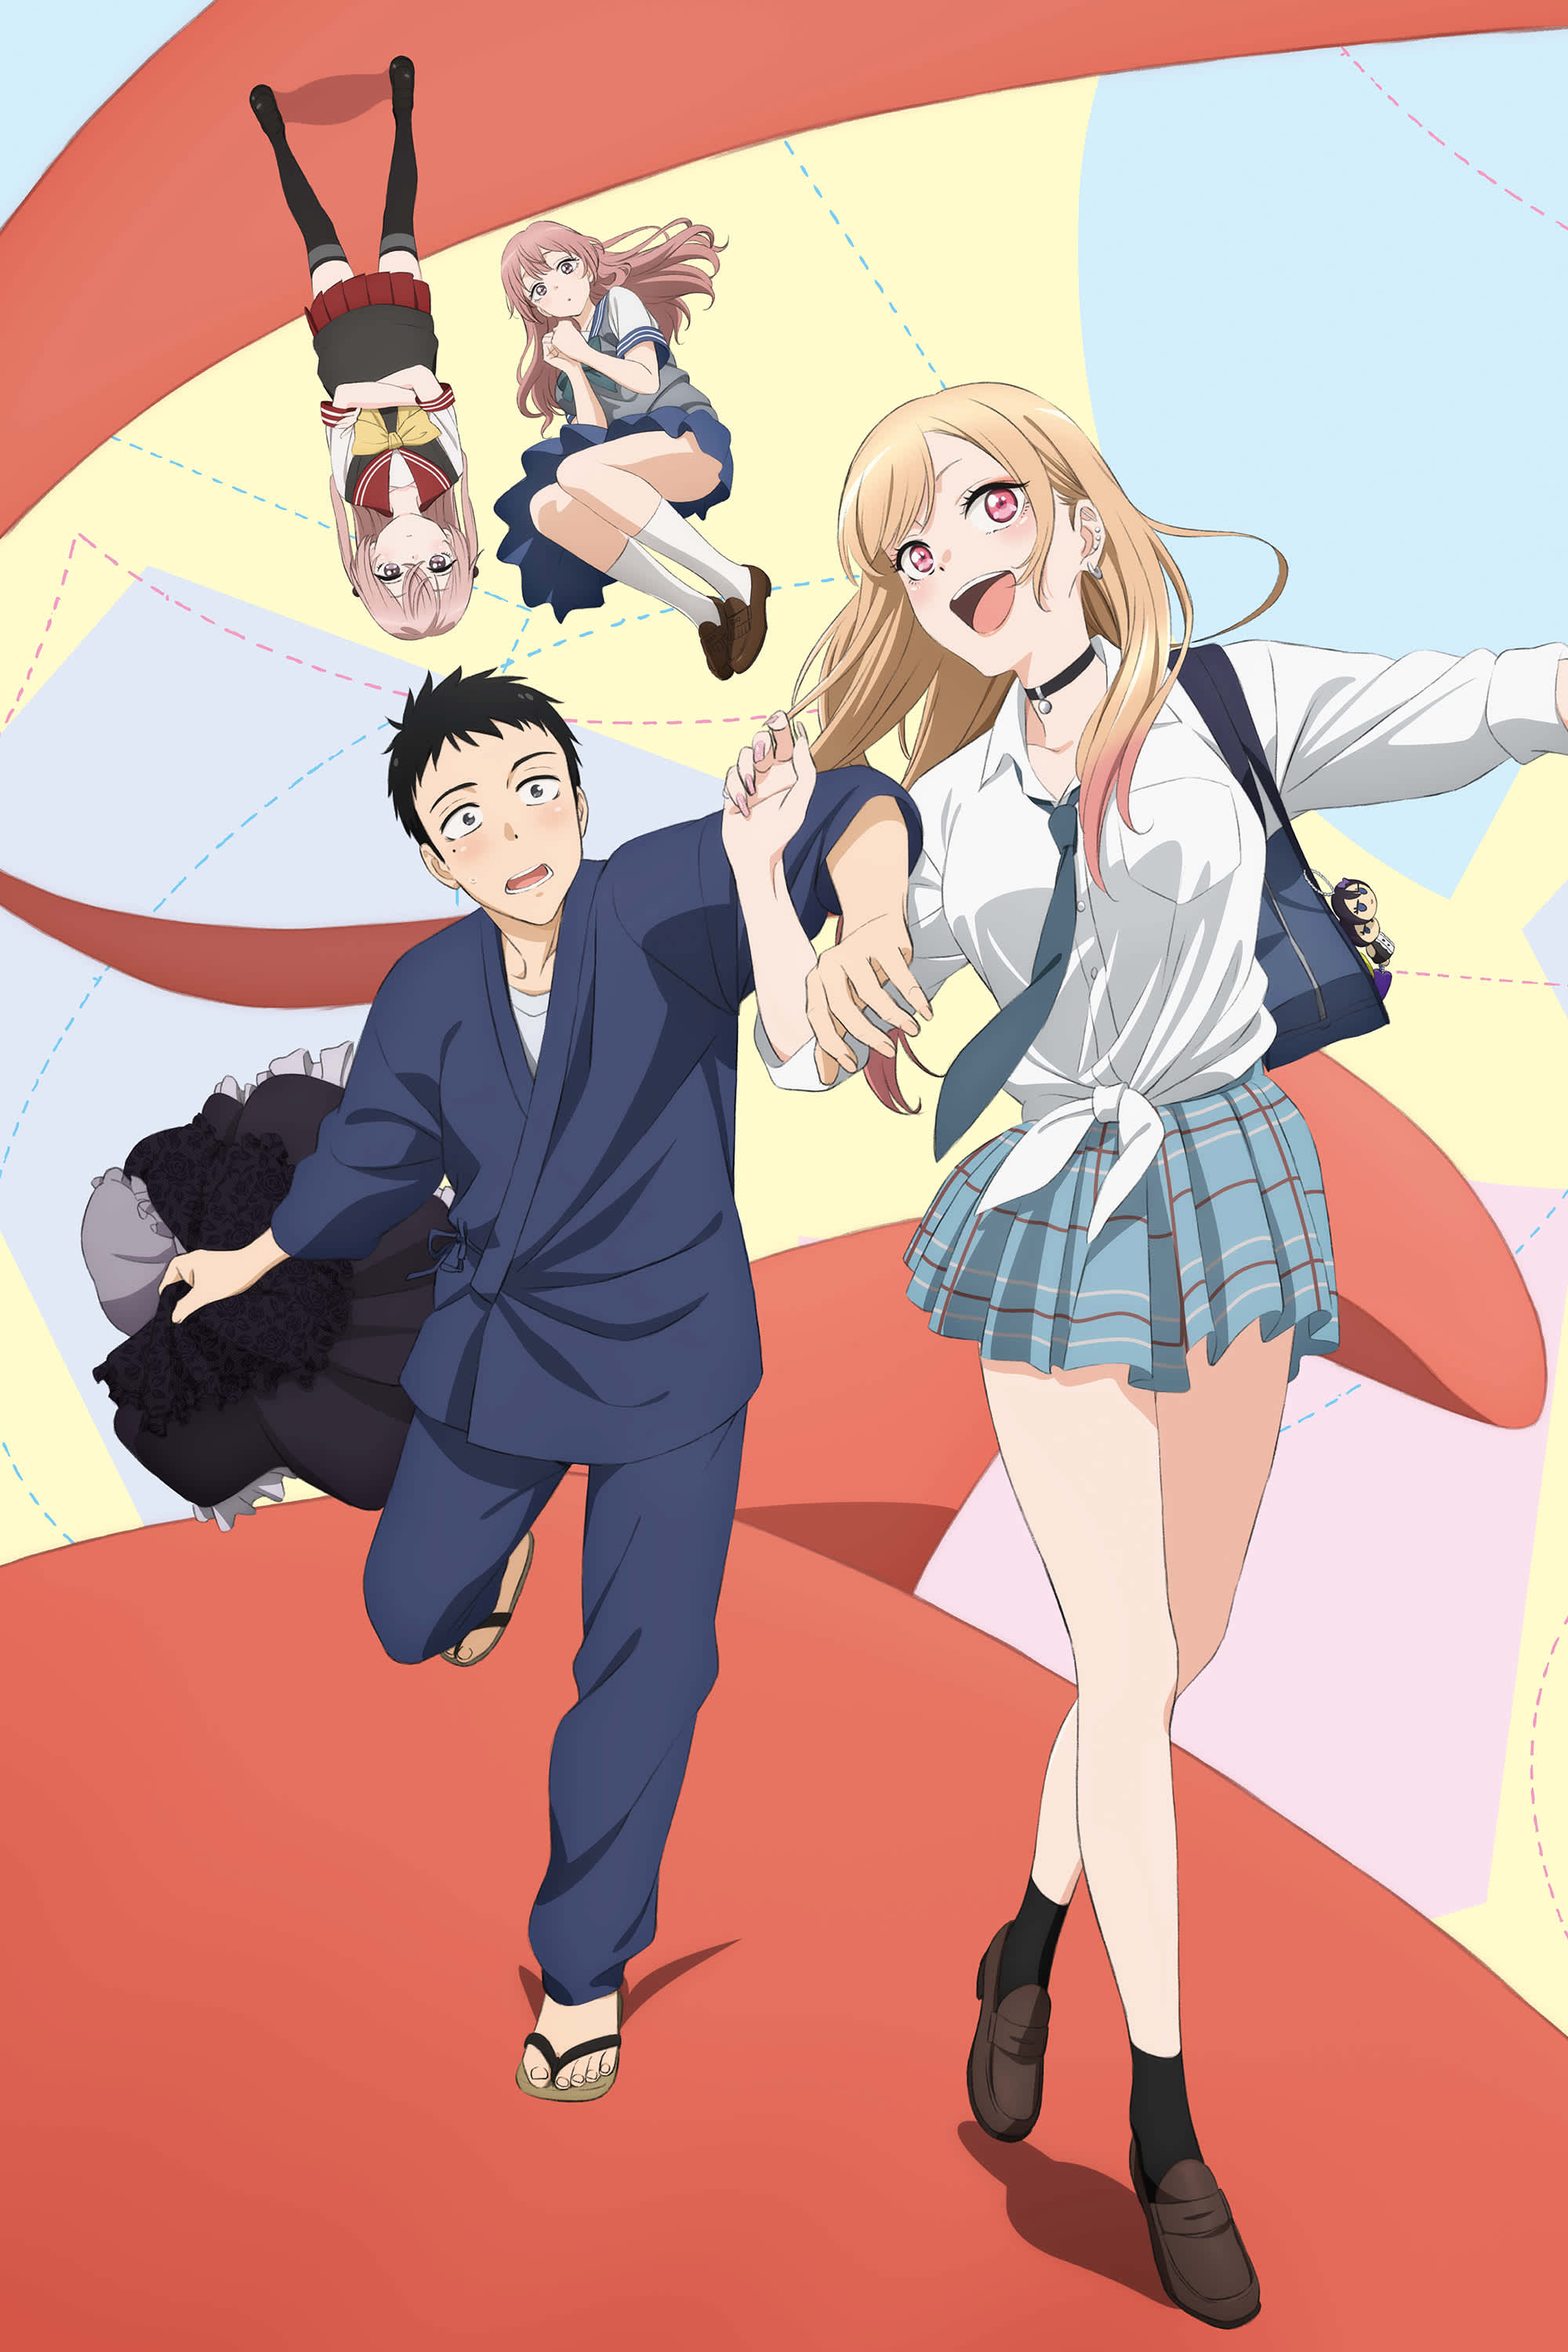 Funimation anuncia dublagem de My Dress-Up Darling e outros animes da  temporada de inverno - Critical Hits